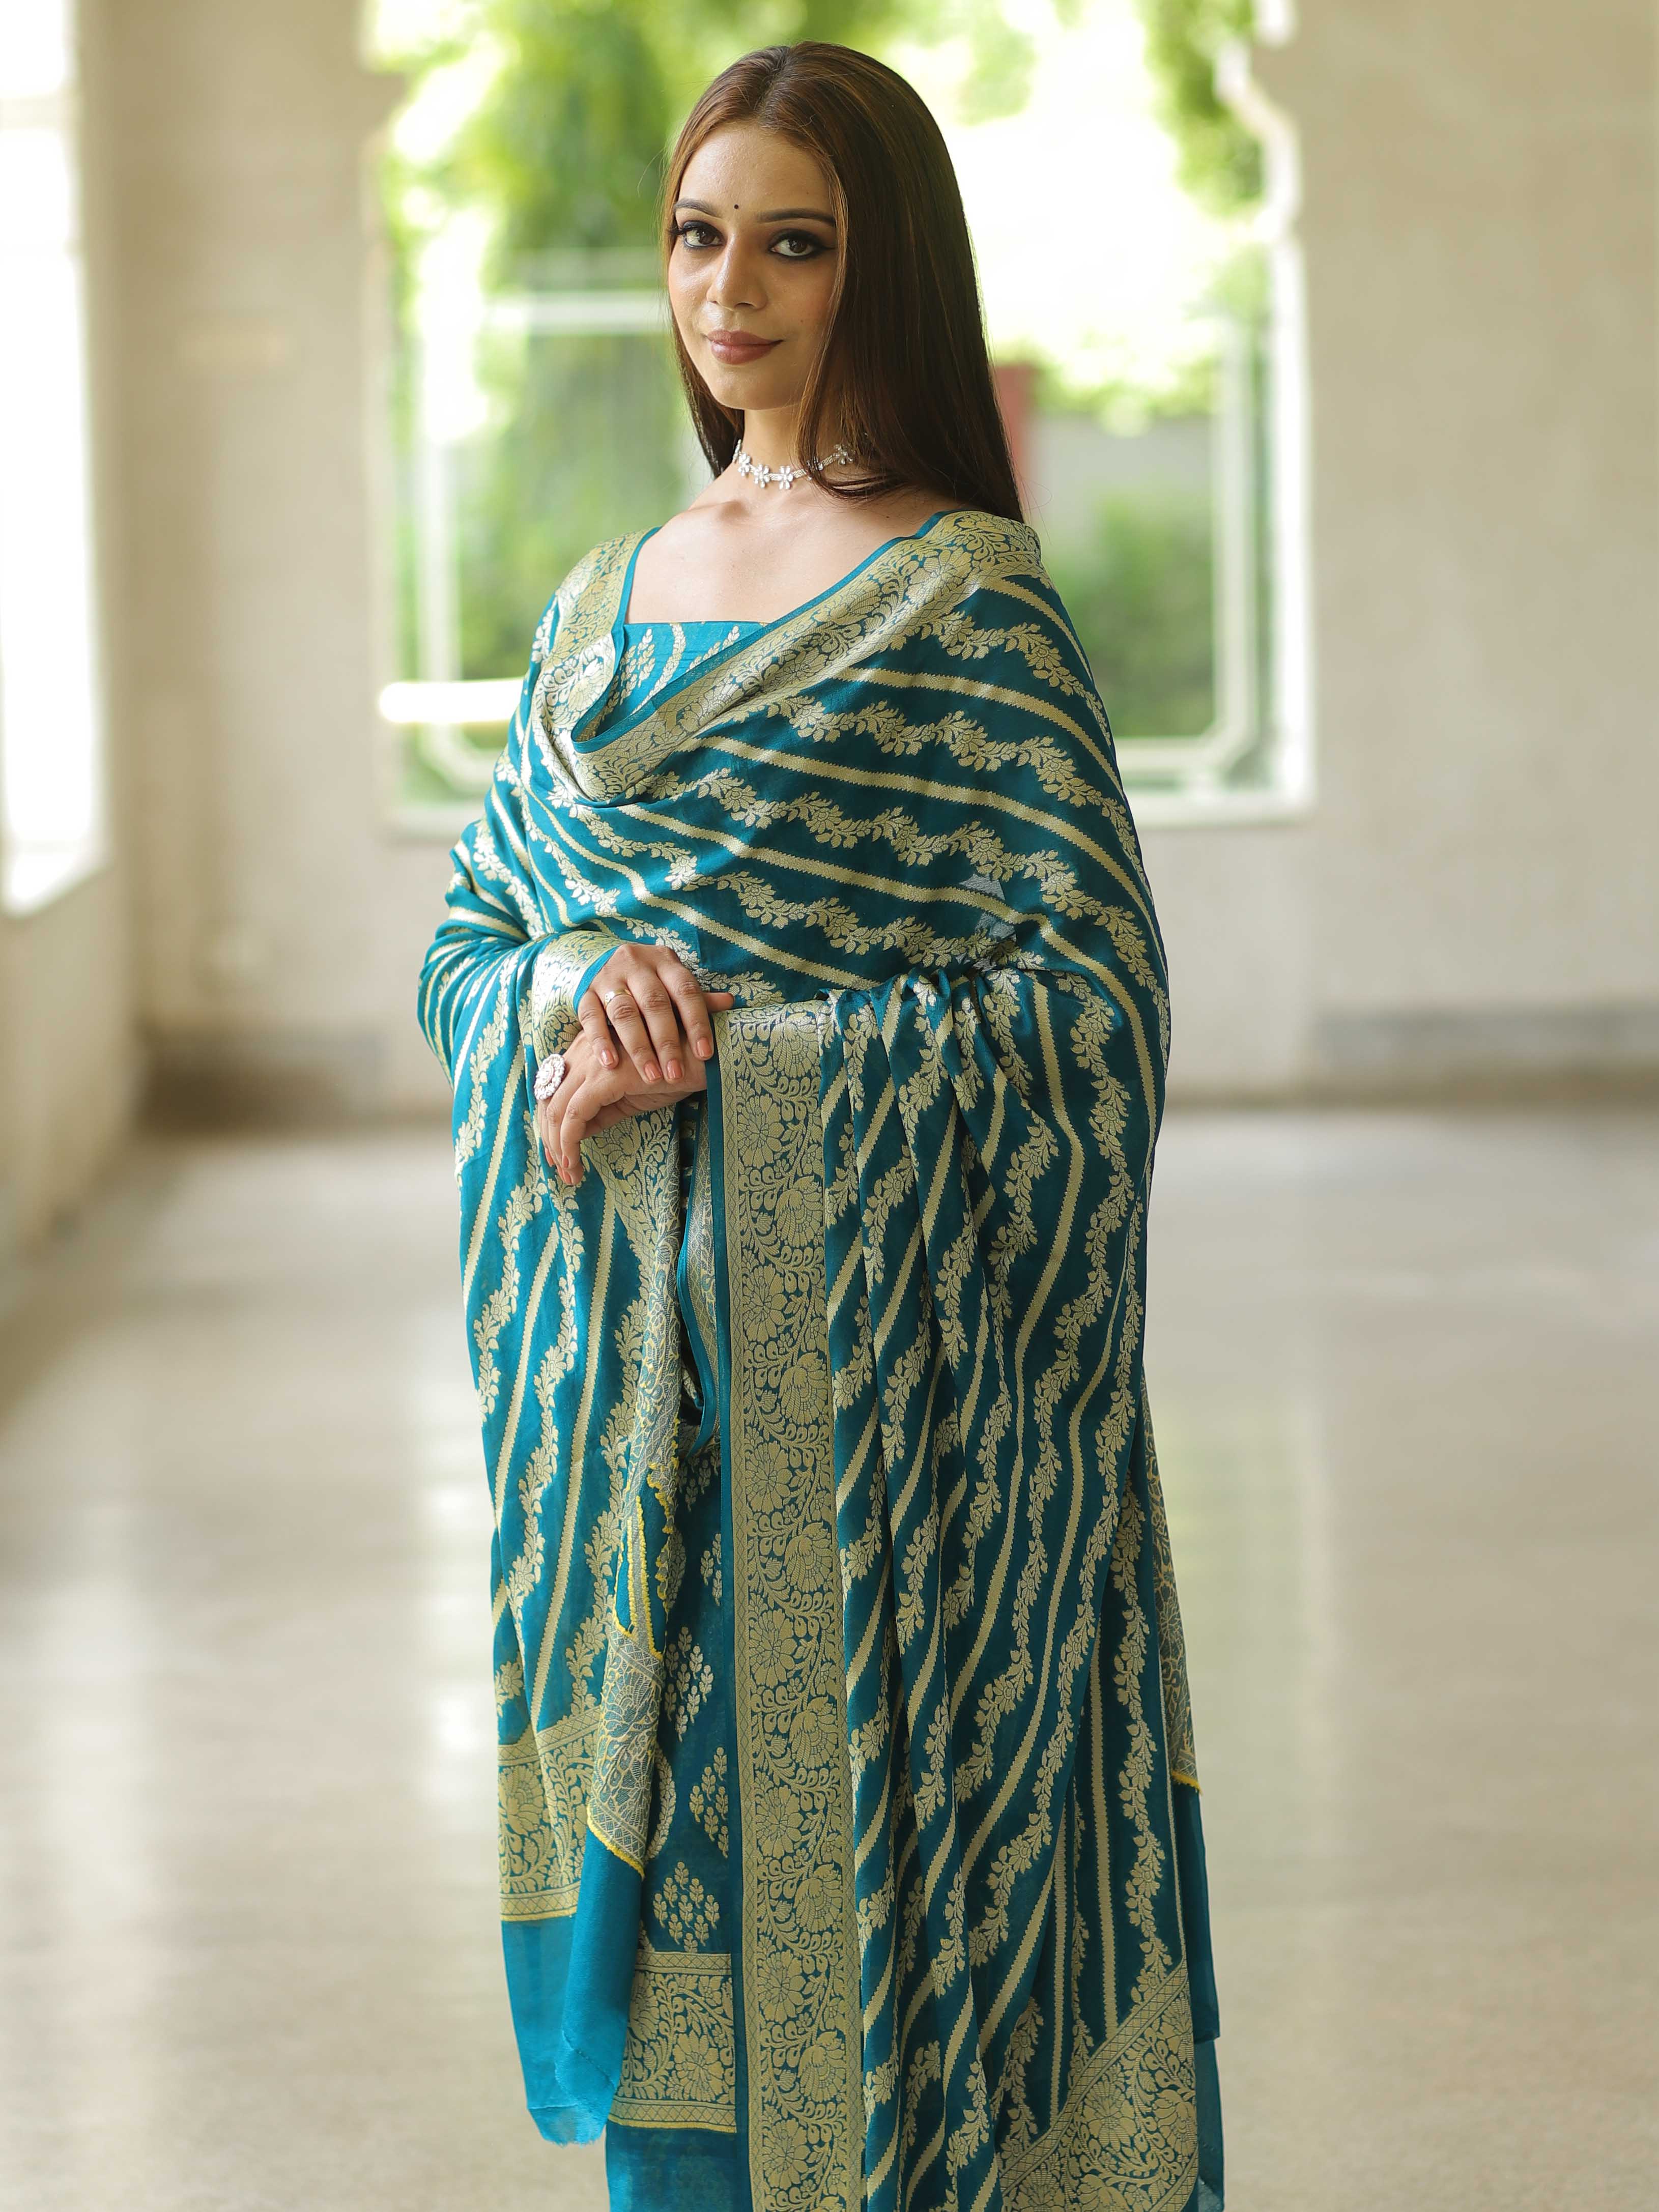 Banarasee Handloom Pure Chiffon Silk Kameez Fabric With Dupatta-Teal Blue